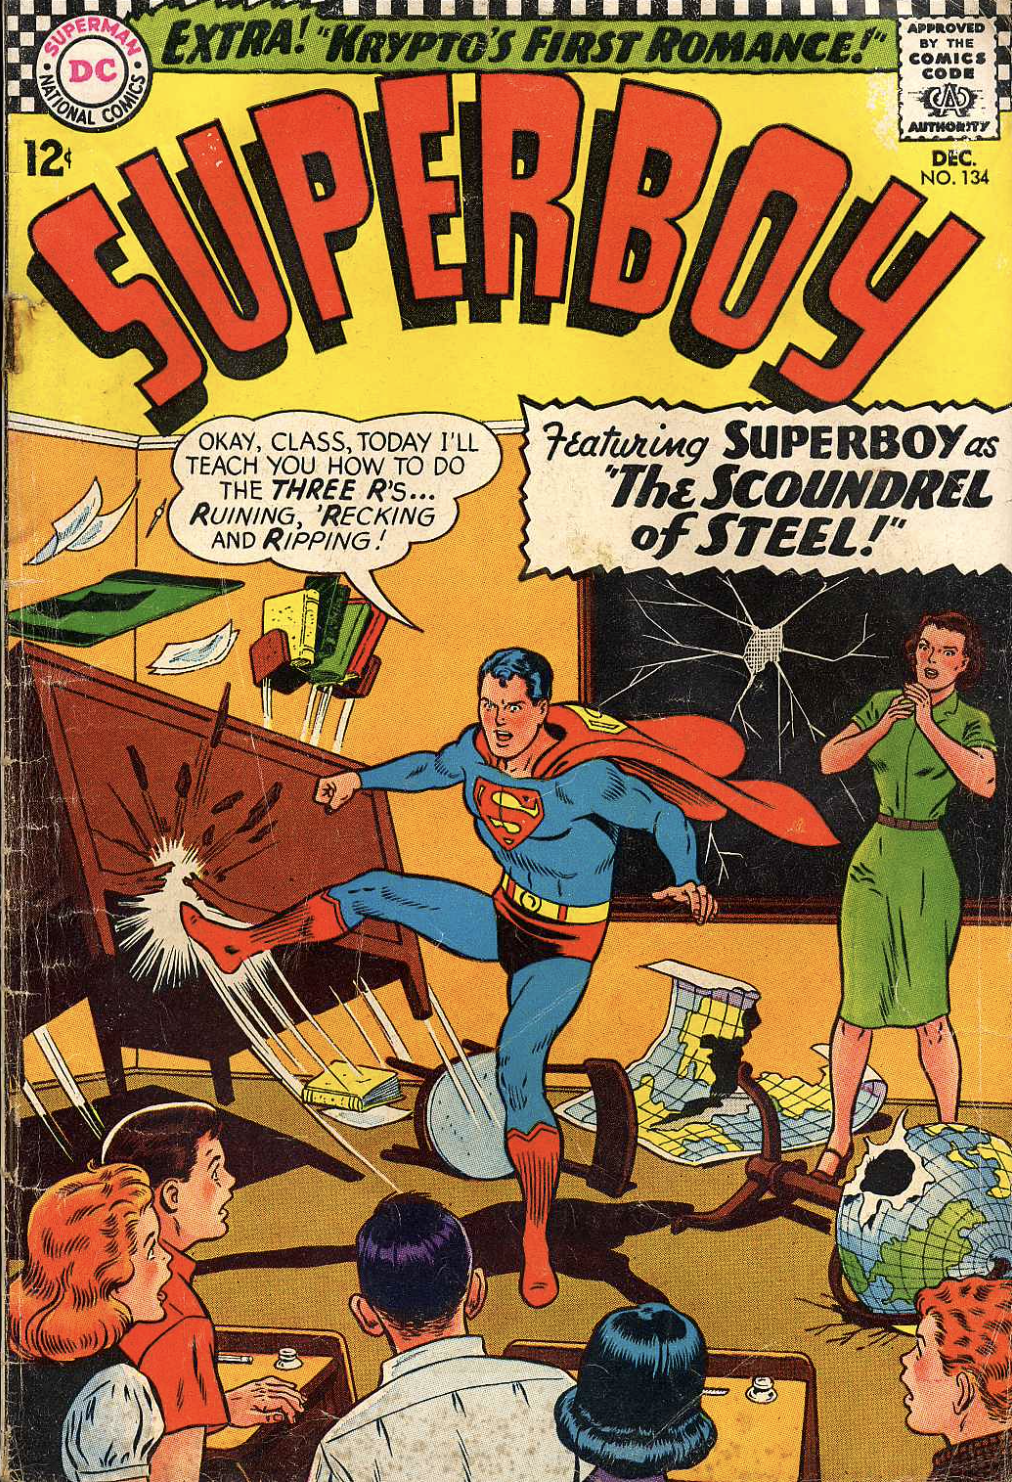 Throw Me a Bone (Superboy 134)